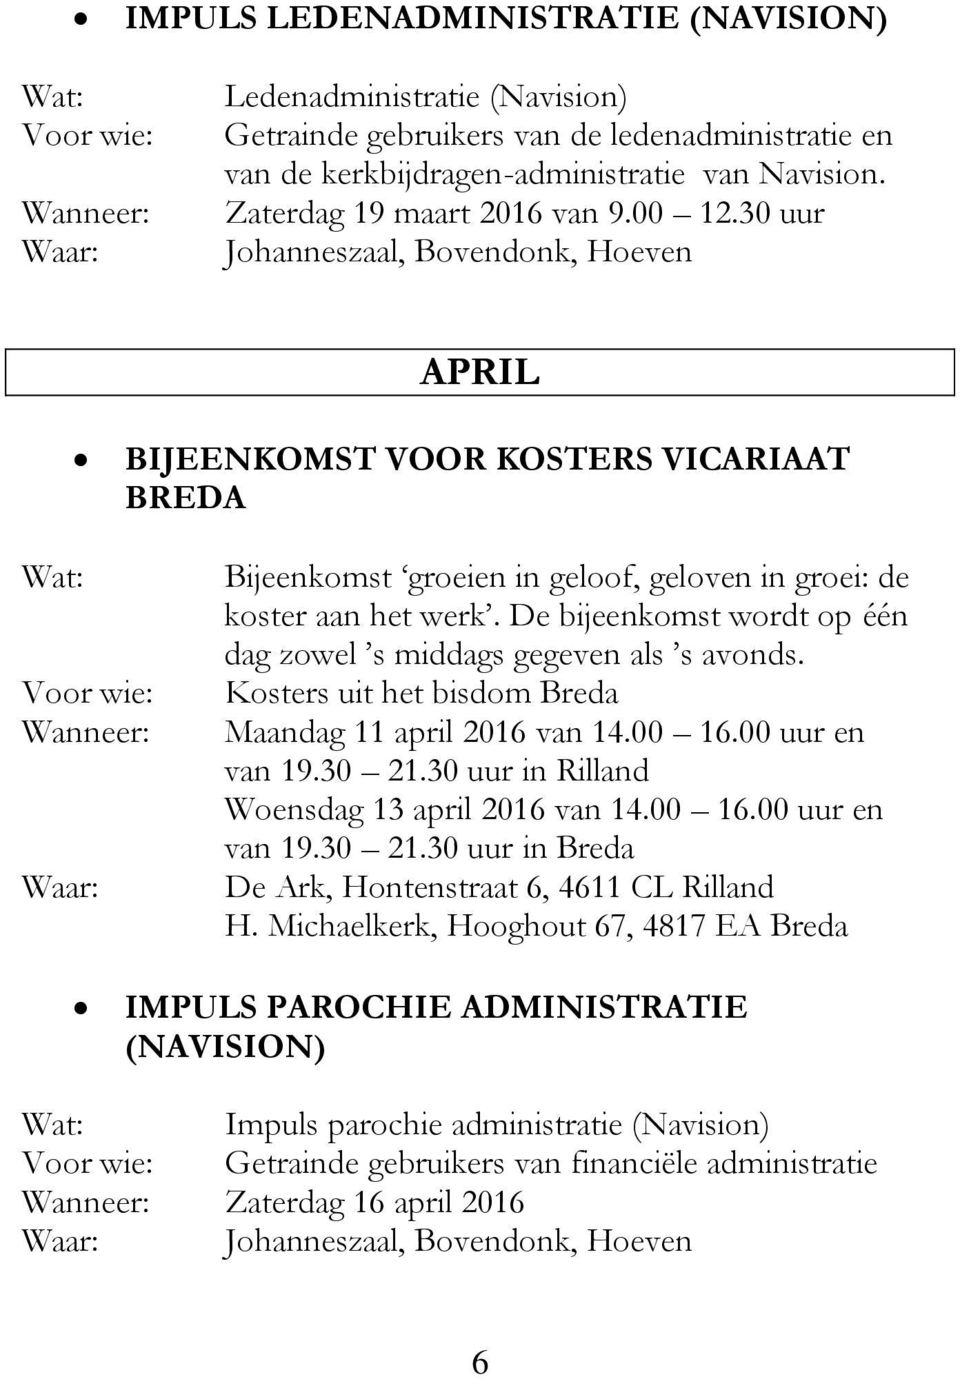 De bijeenkomst wordt op één dag zowel s middags gegeven als s avonds. Kosters uit het bisdom Breda Maandag 11 april 2016 van 14.00 16.00 uur en van 19.30 21.